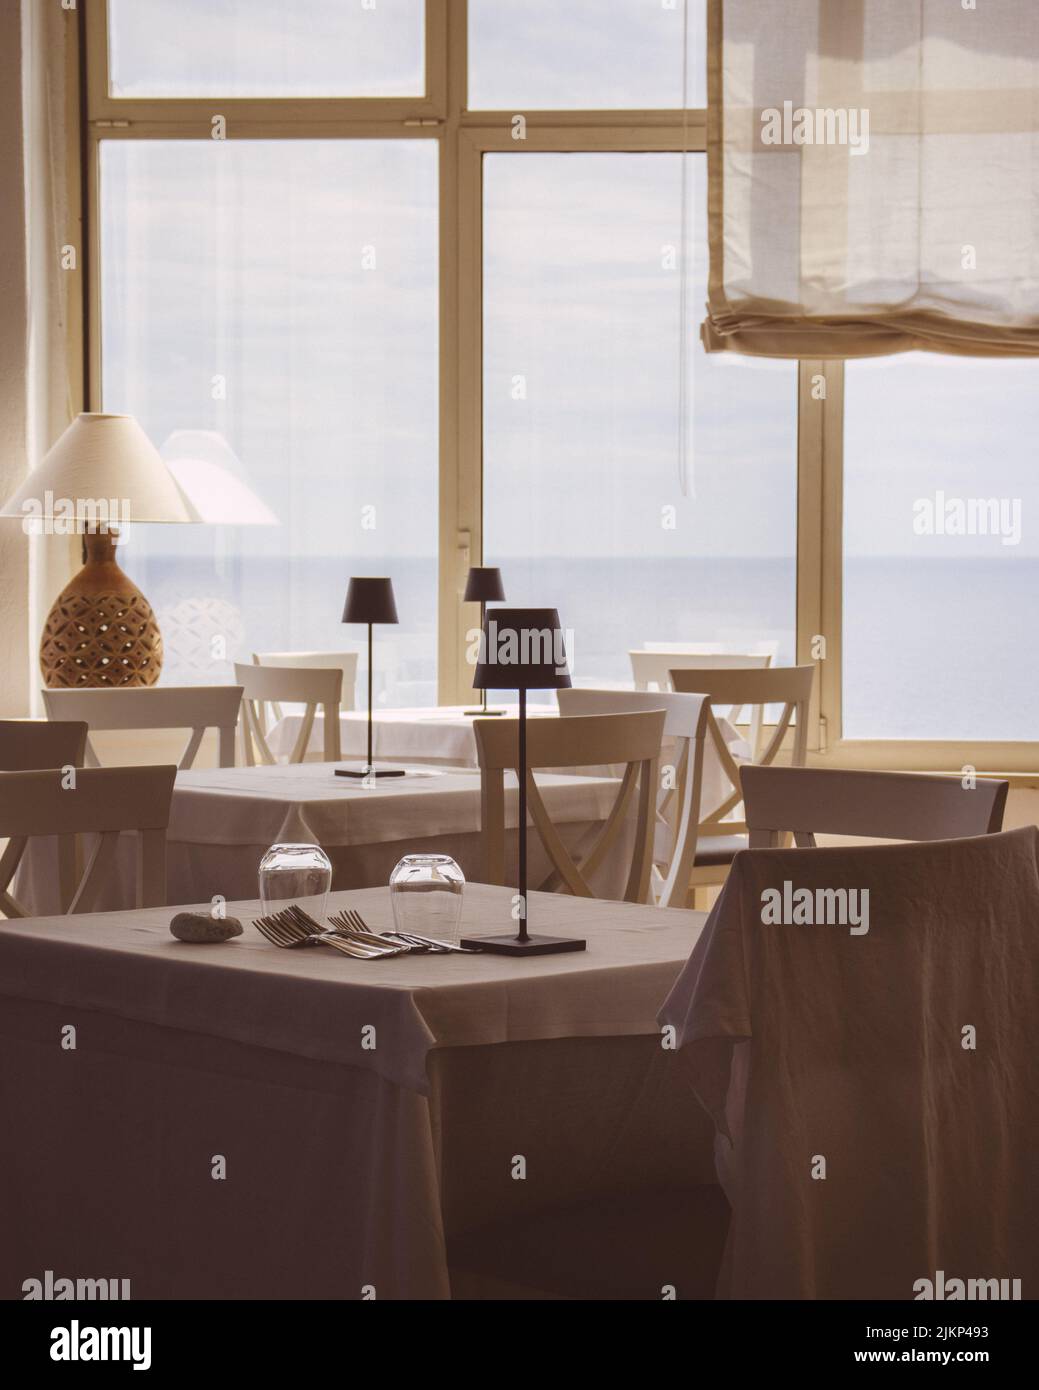 Eine schöne Aufnahme der Inneneinrichtung von hellen Restauranttischen mit Pro Table-Lampen und Glasfenstern Stockfoto